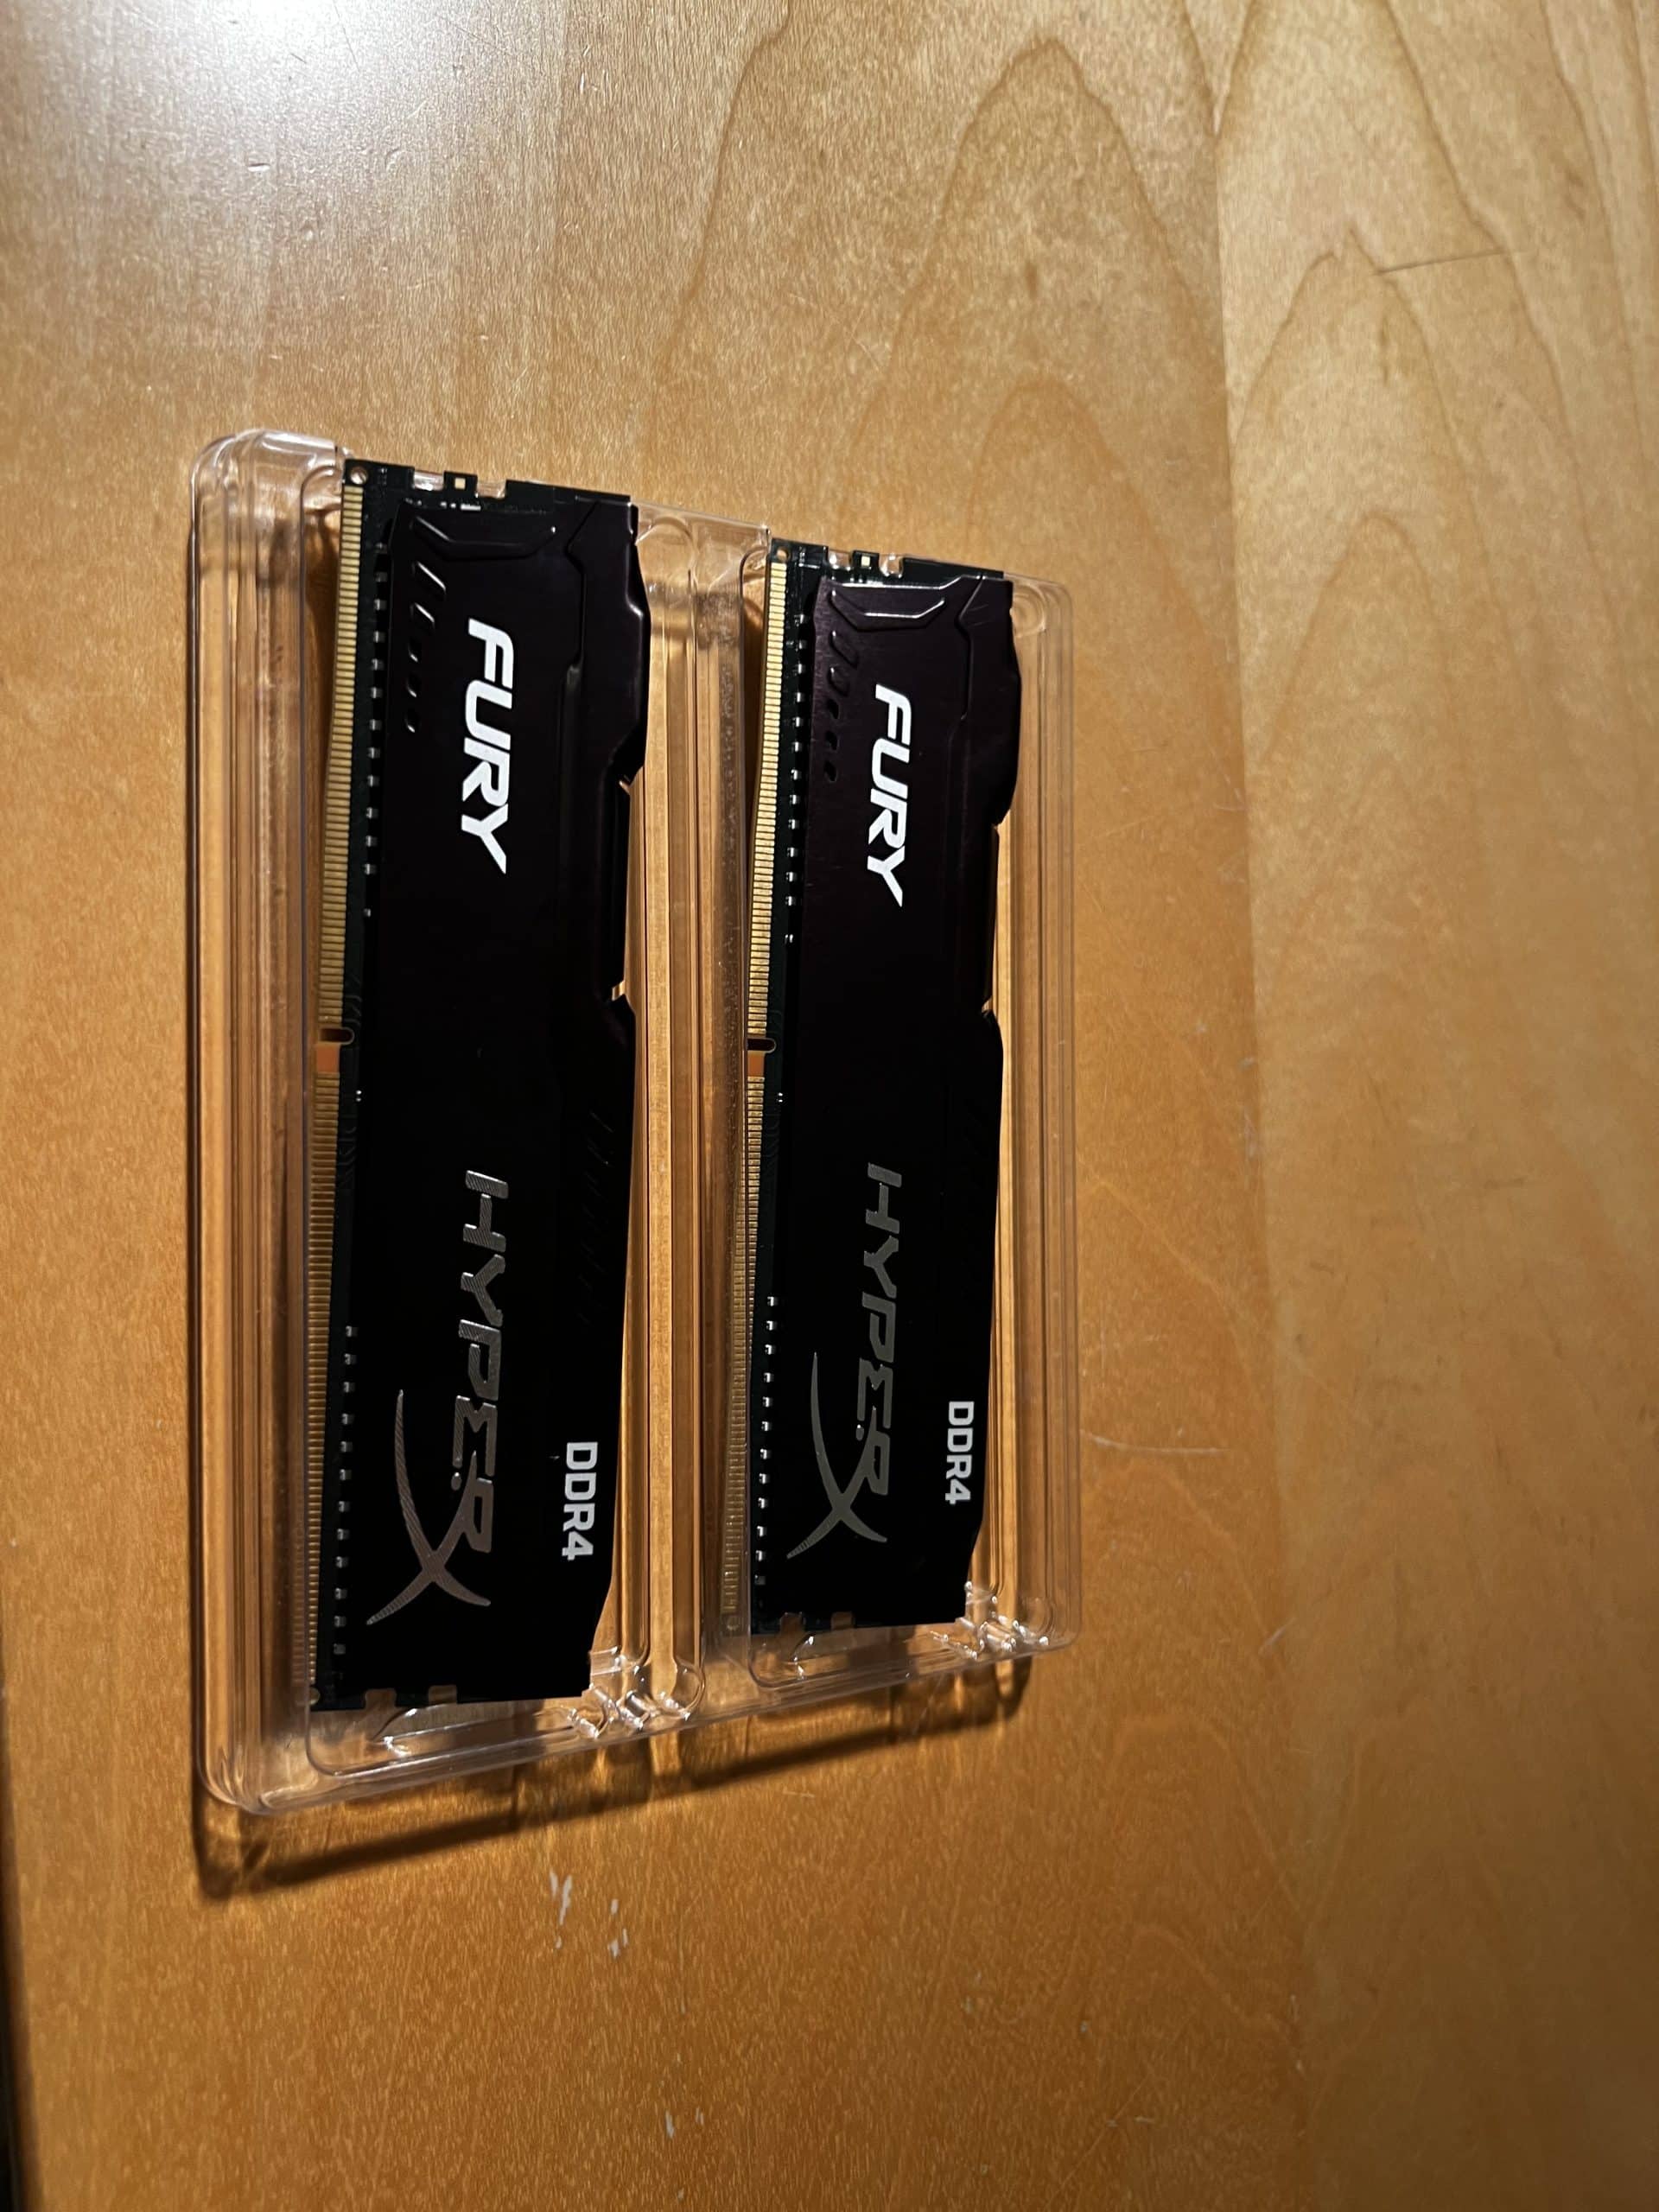 HyperX Fury DDR4 2666MHz 2x8GB